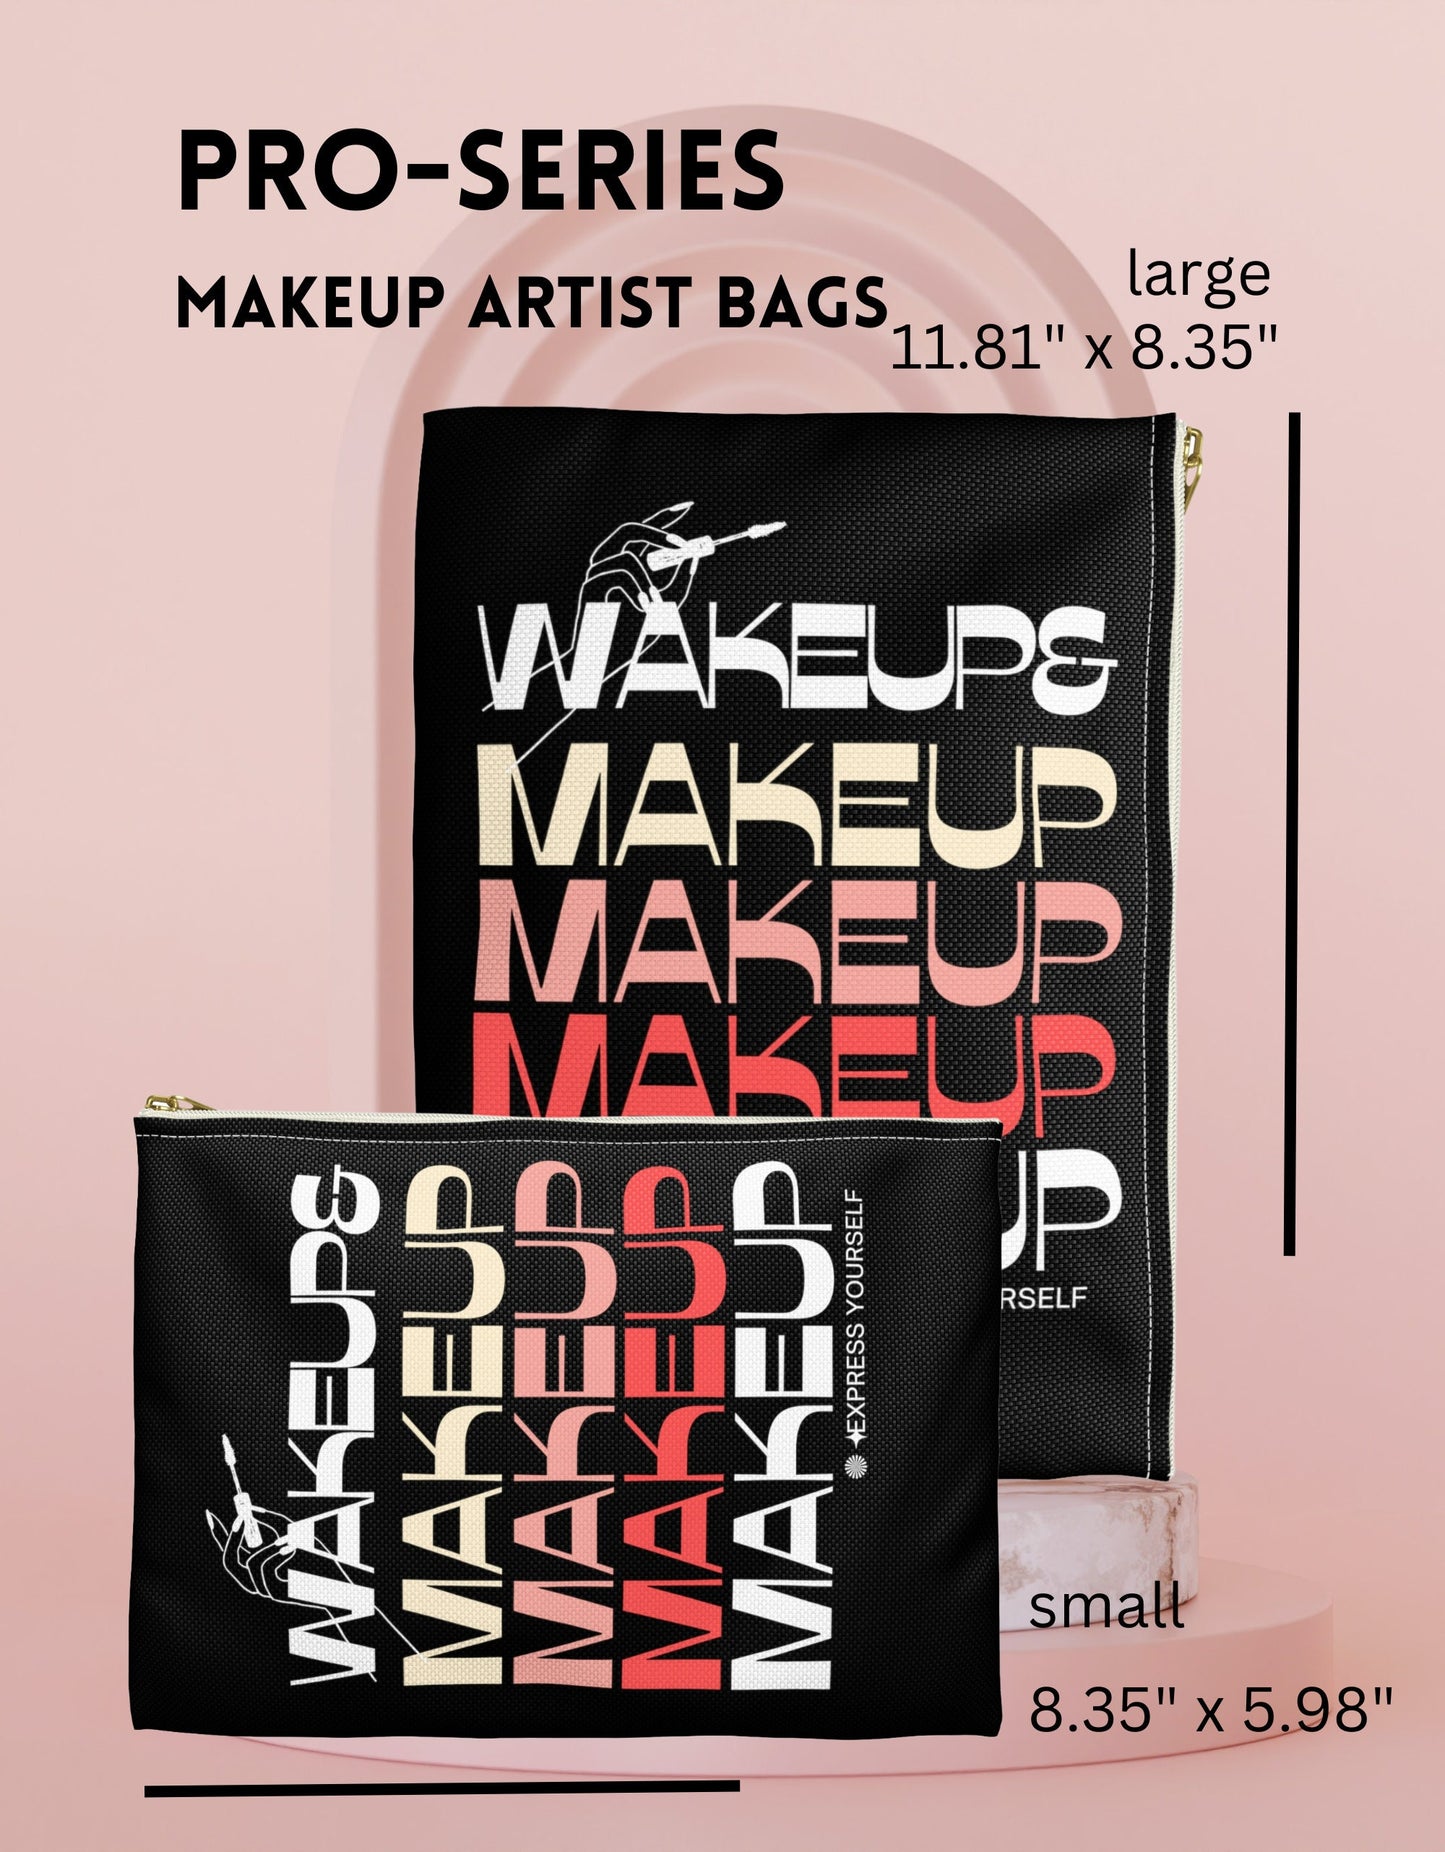 Makeup Artist Bag MUA Pro Makeup Pouch Travel Organizer Bag Cosmetologist Beauty School Student Grad Gift Makeup Artist Salon Wakeup Makeup